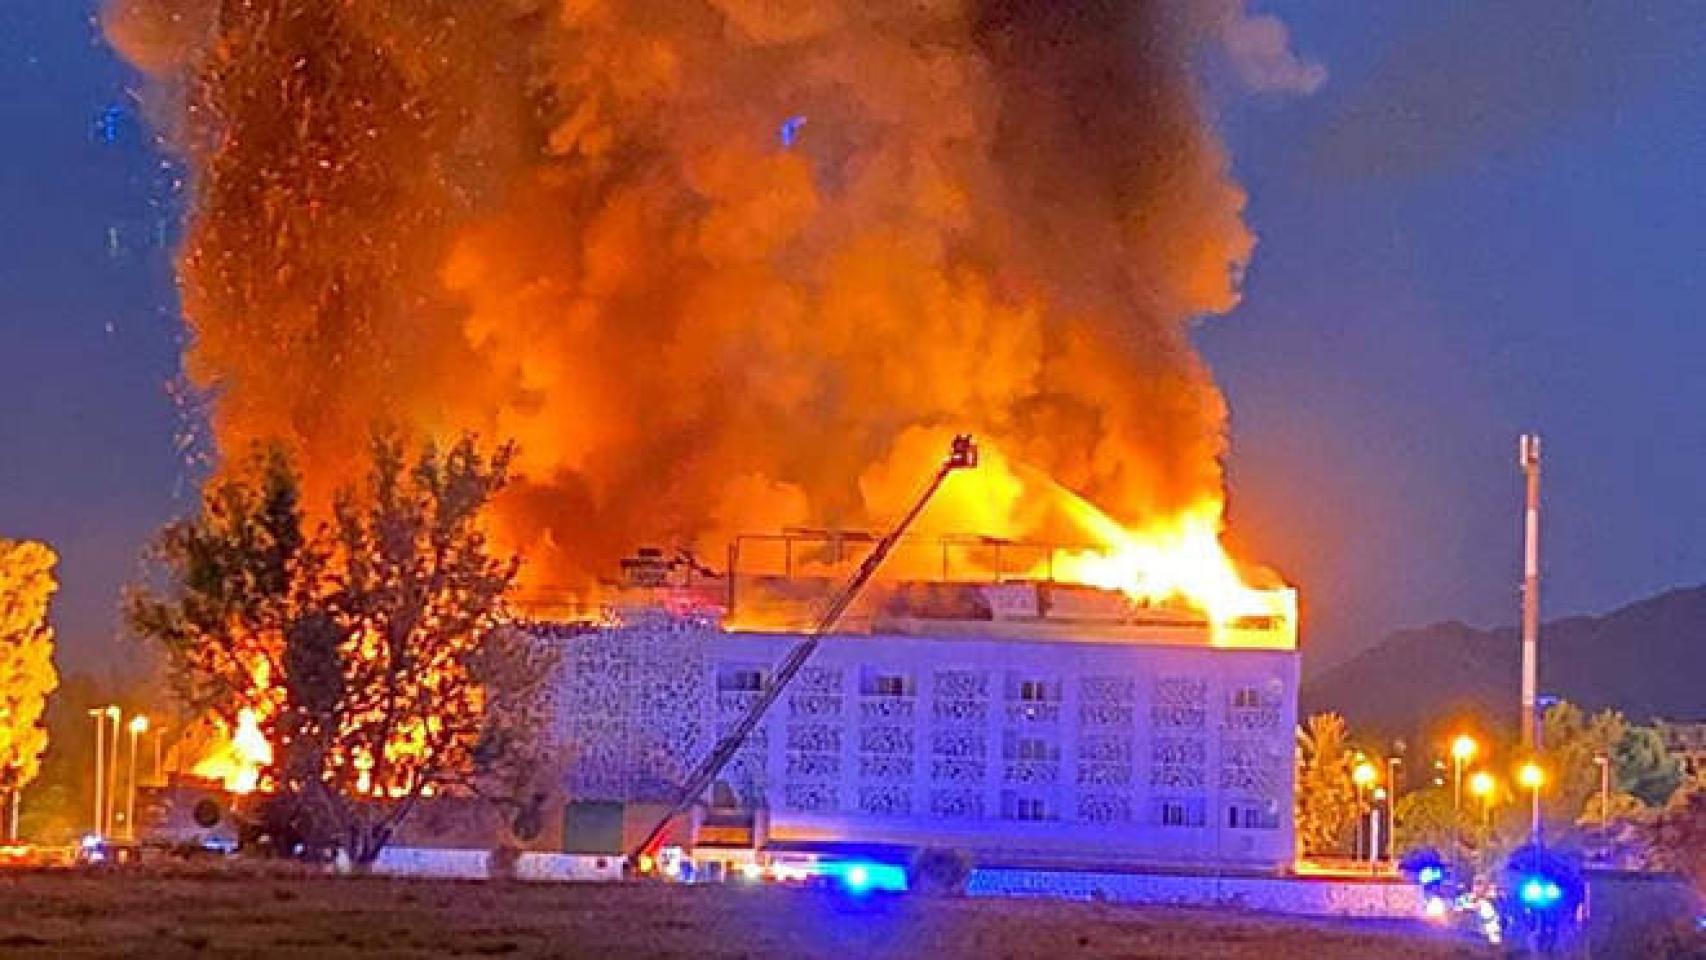 FOTO: Imagen del hotel ardiendo.